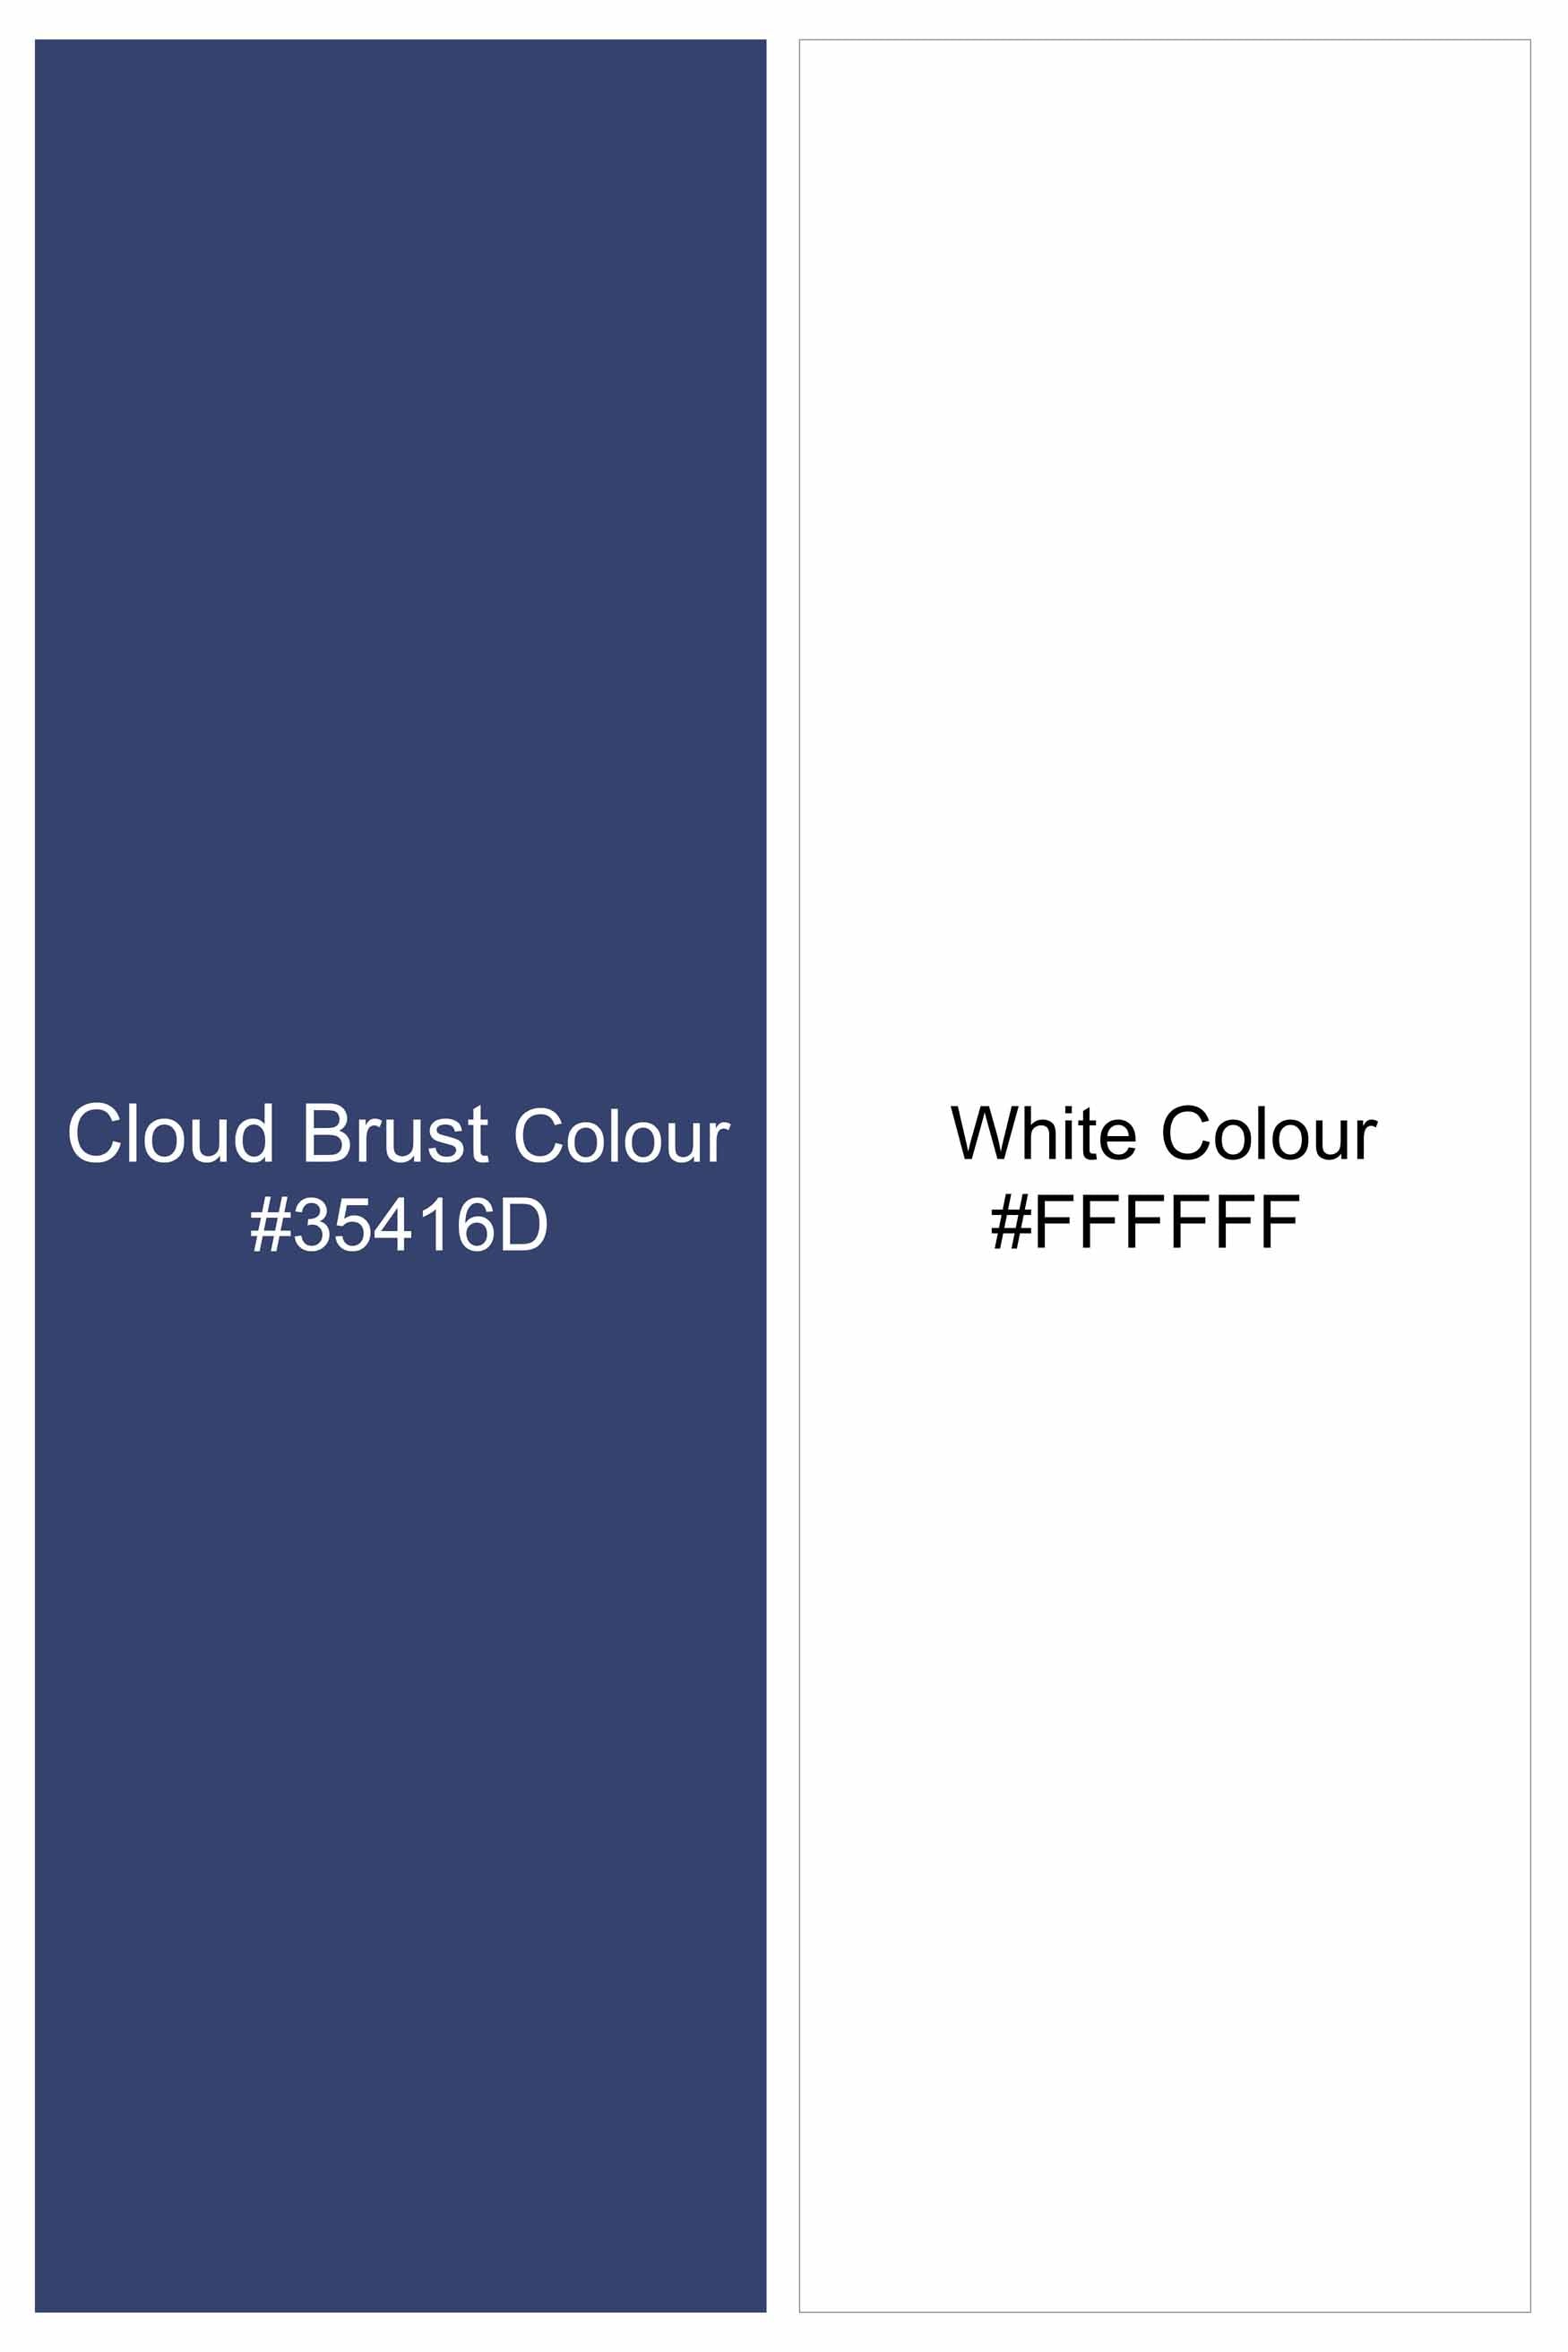 Cloud Burst Blue Hand Painted Luxurious Linen Designer Shirt 6443-BD-BLK-ART-38, 6443-BD-BLK-ART-H-38, 6443-BD-BLK-ART-39, 6443-BD-BLK-ART-H-39, 6443-BD-BLK-ART-40, 6443-BD-BLK-ART-H-40, 6443-BD-BLK-ART-42, 6443-BD-BLK-ART-H-42, 6443-BD-BLK-ART-44, 6443-BD-BLK-ART-H-44, 6443-BD-BLK-ART-46, 6443-BD-BLK-ART-H-46, 6443-BD-BLK-ART-48, 6443-BD-BLK-ART-H-48, 6443-BD-BLK-ART-50, 6443-BD-BLK-ART-H-50, 6443-BD-BLK-ART-52, 6443-BD-BLK-ART-H-52